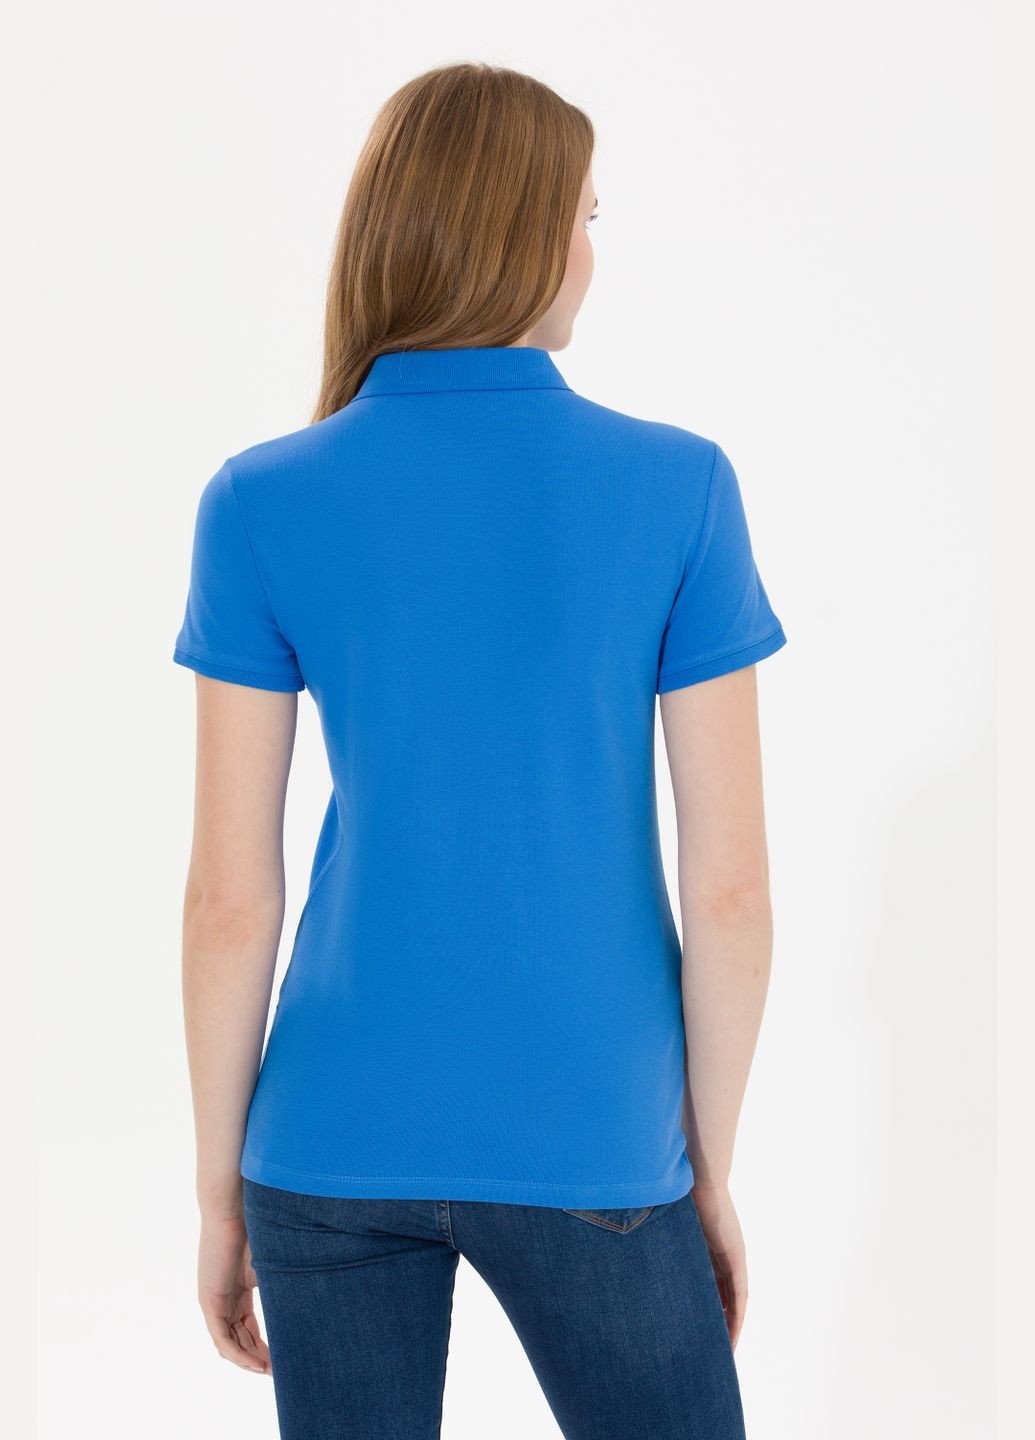 Синяя футболка u.s.polo assn женская U.S. Polo Assn.